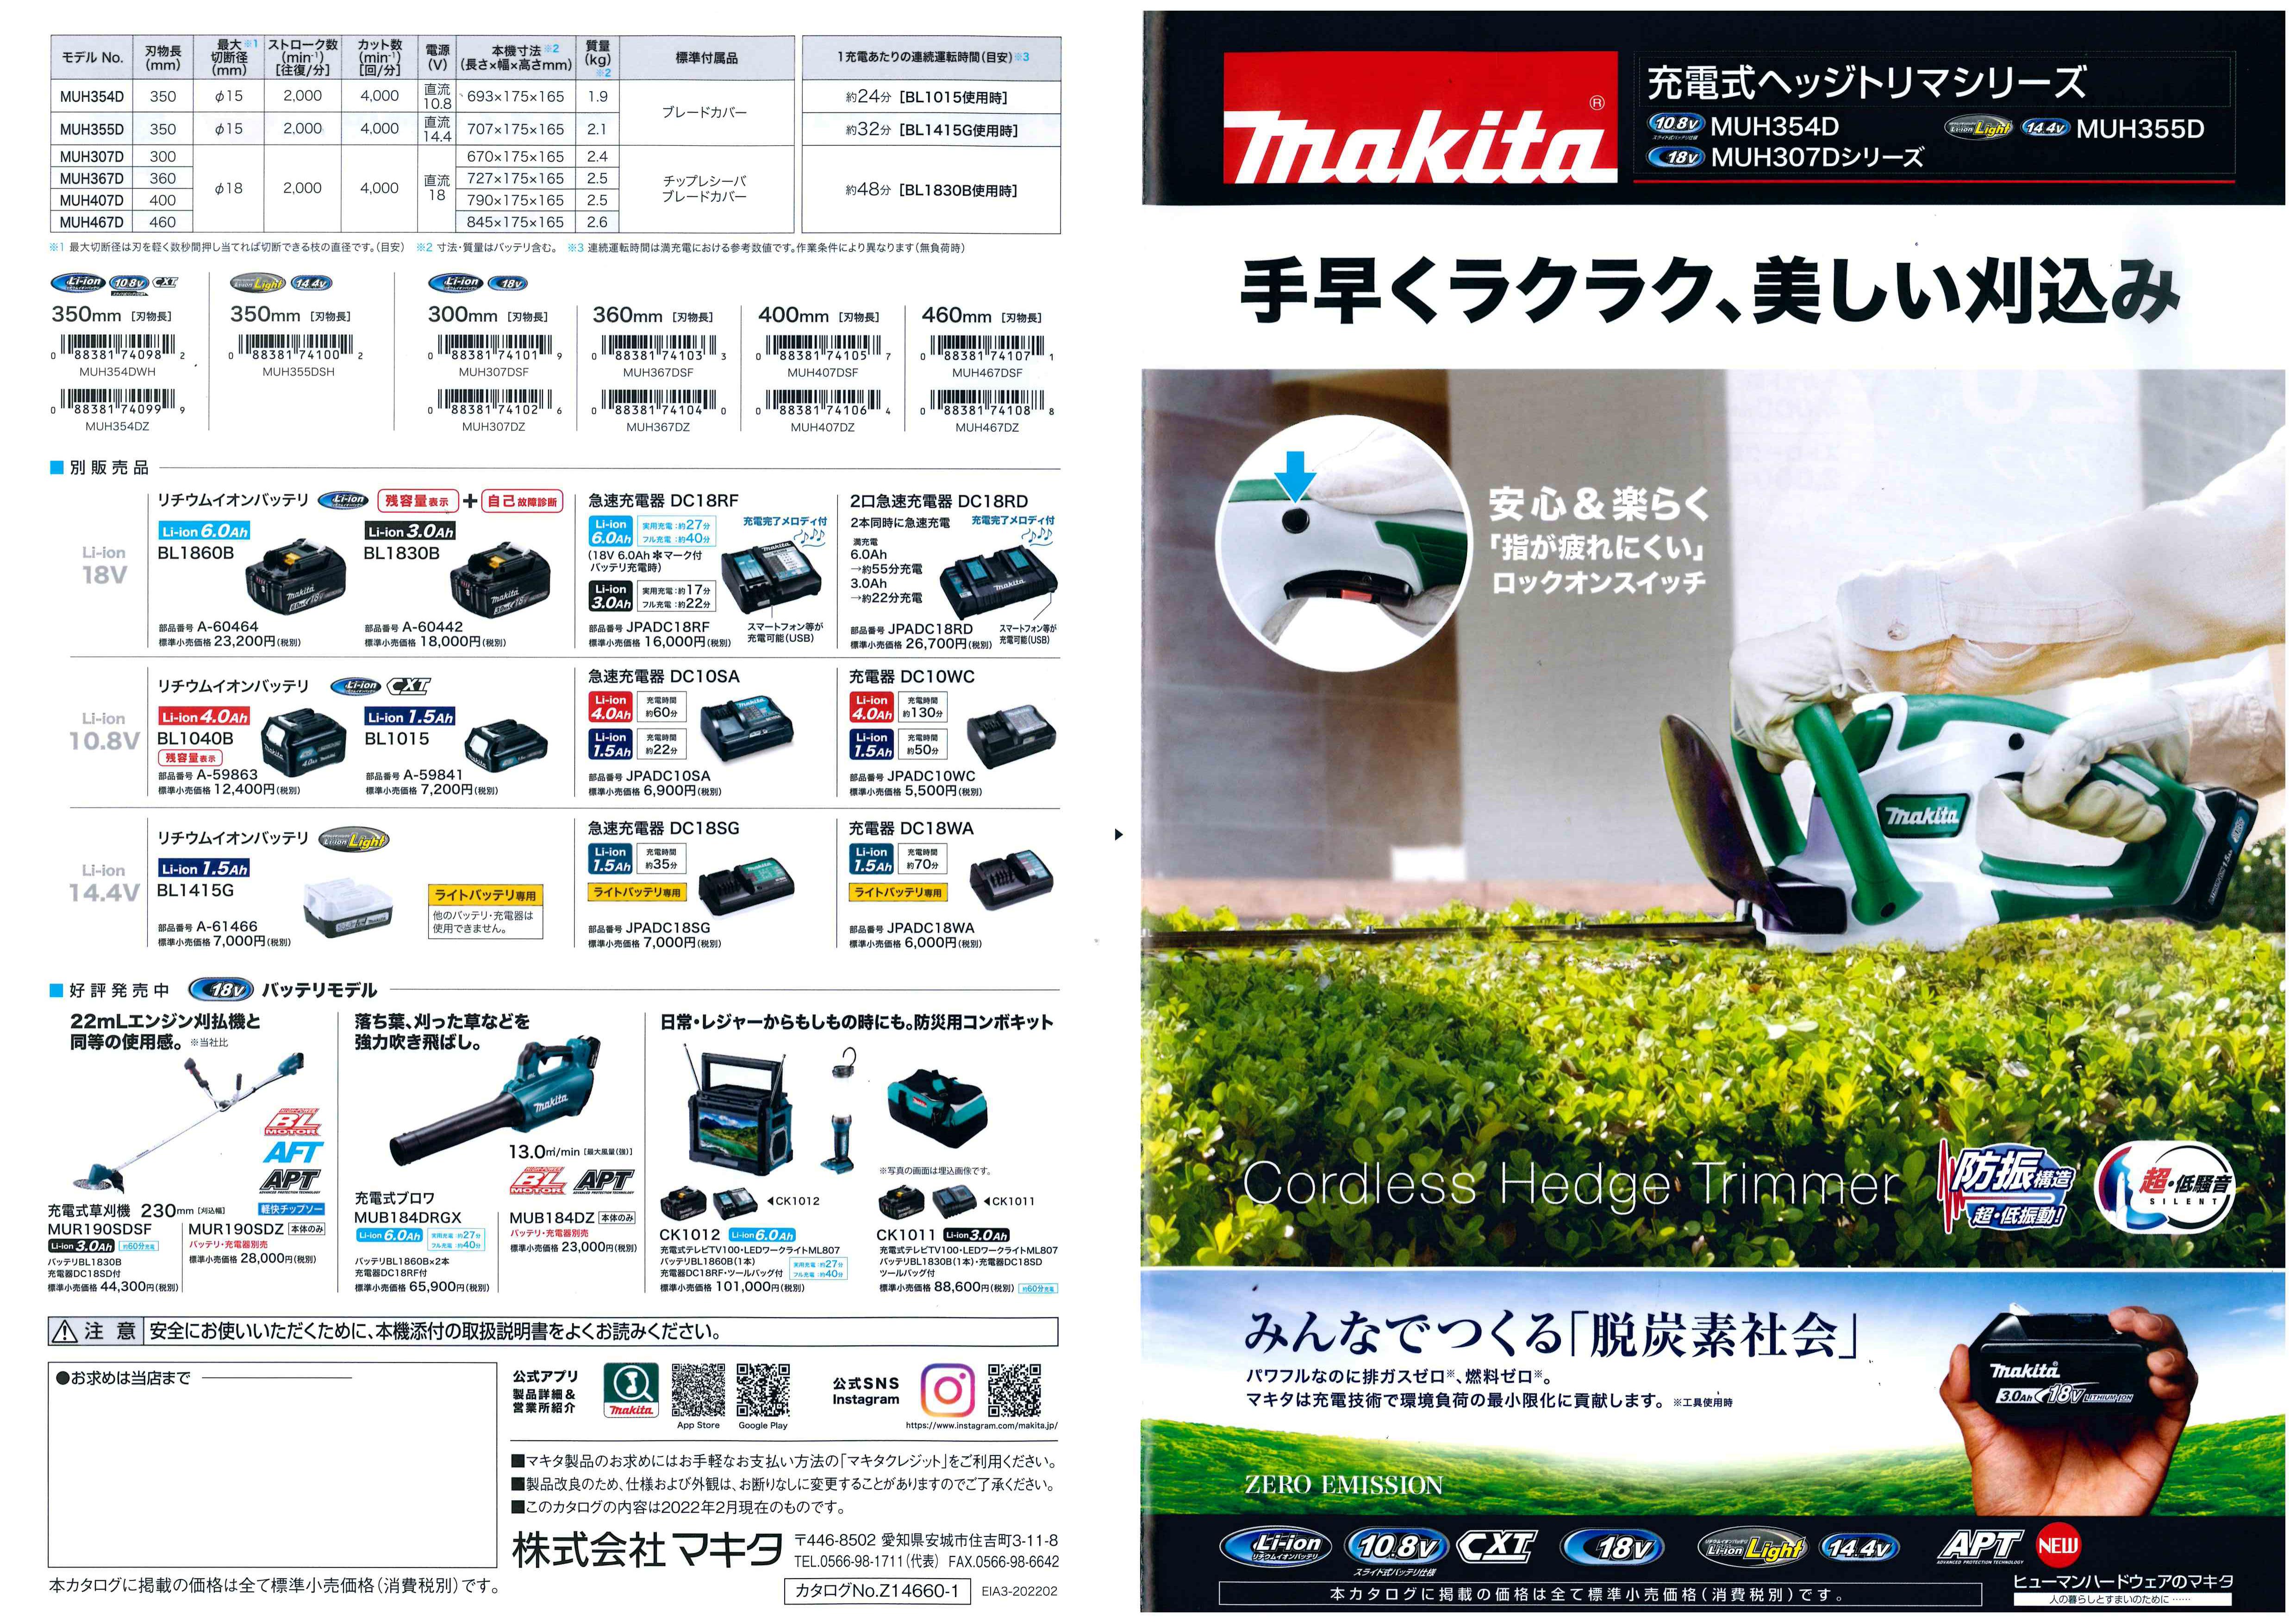 (マキタ) 充電式ヘッジトリマ MUH355DSH バッテリBL1415G 充電器DC18SG付 刈込幅350mm 特殊コーティング刃仕様 14.4V対応 makita - 1